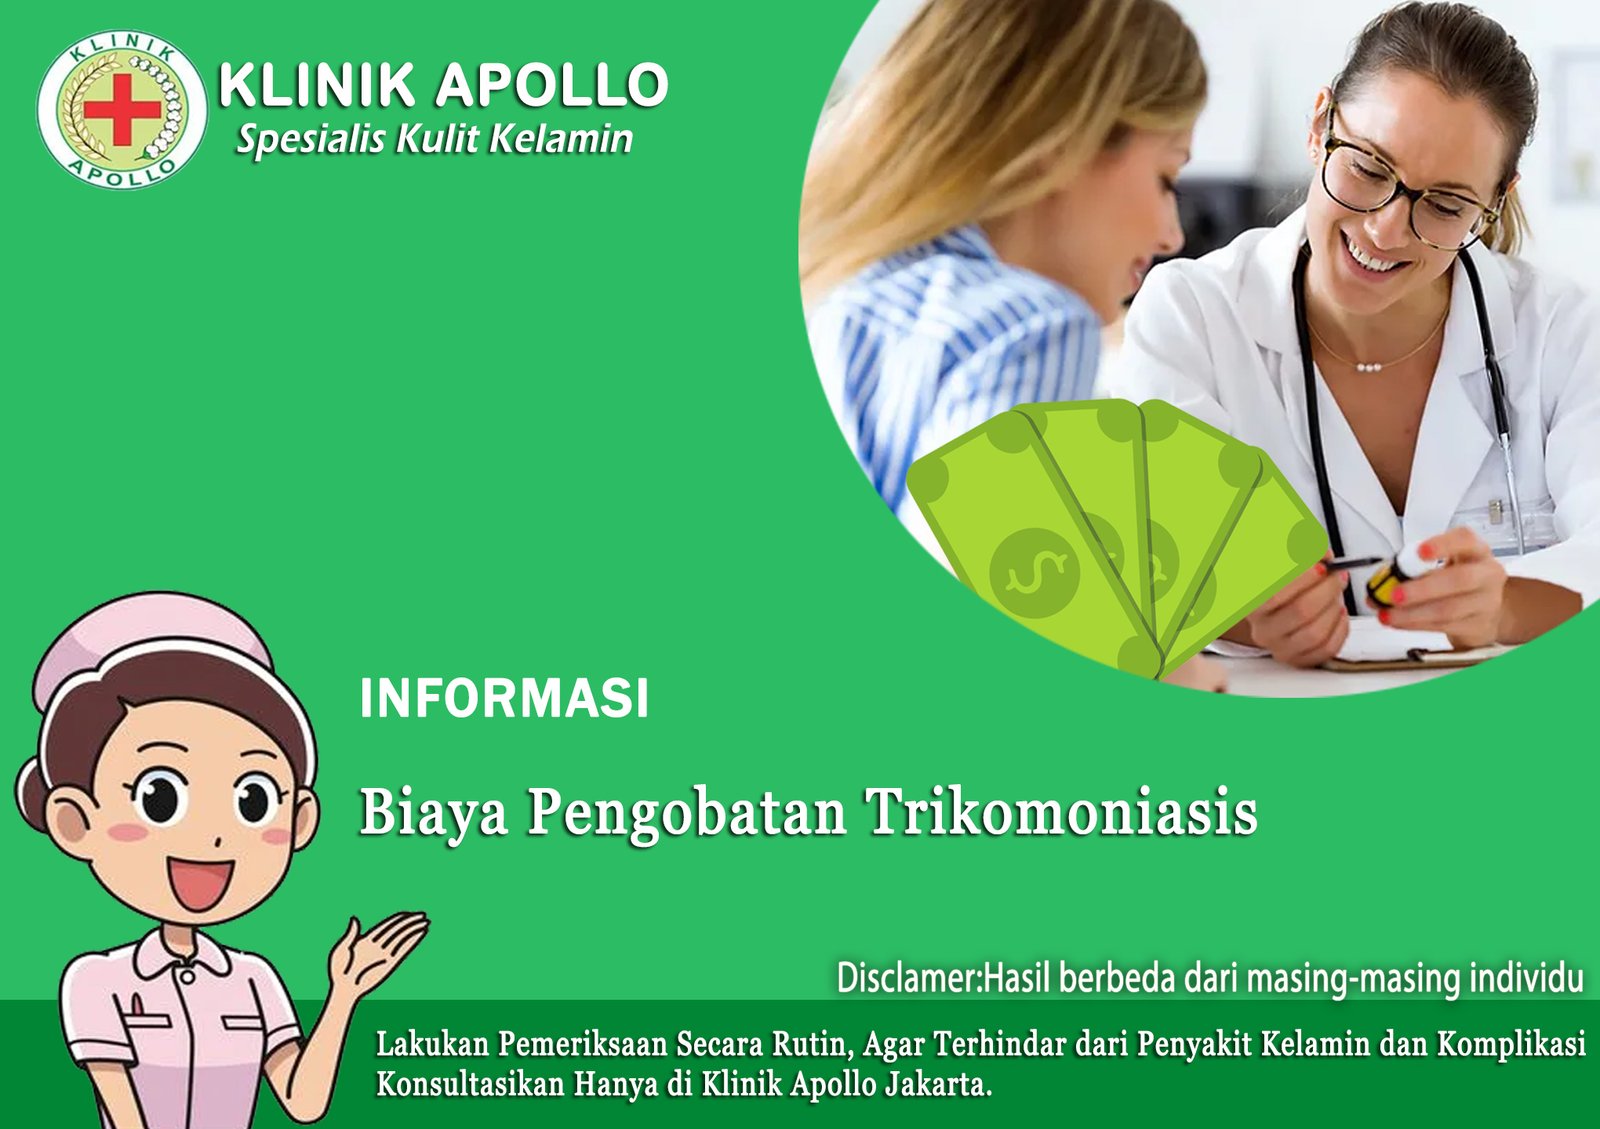 Apakah Biaya Pengobatan Trikomoniasis di Klinik Jakarta Mahal? 